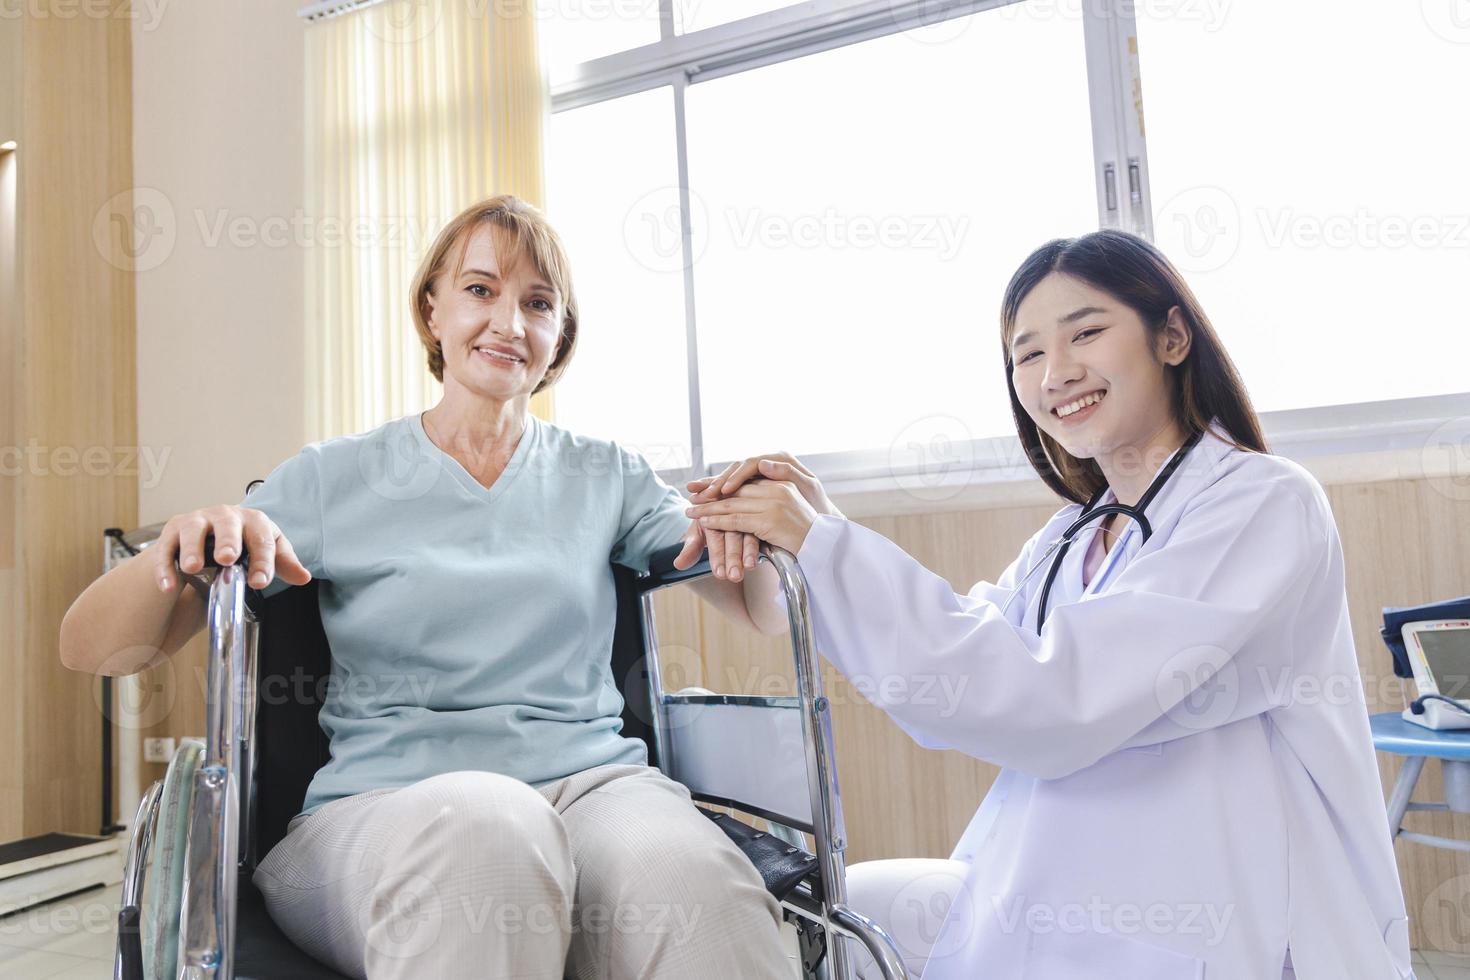 vrouwelijke arts geeft advies en moedigt de oude vrouwelijke patiënt in een rolstoel aan foto